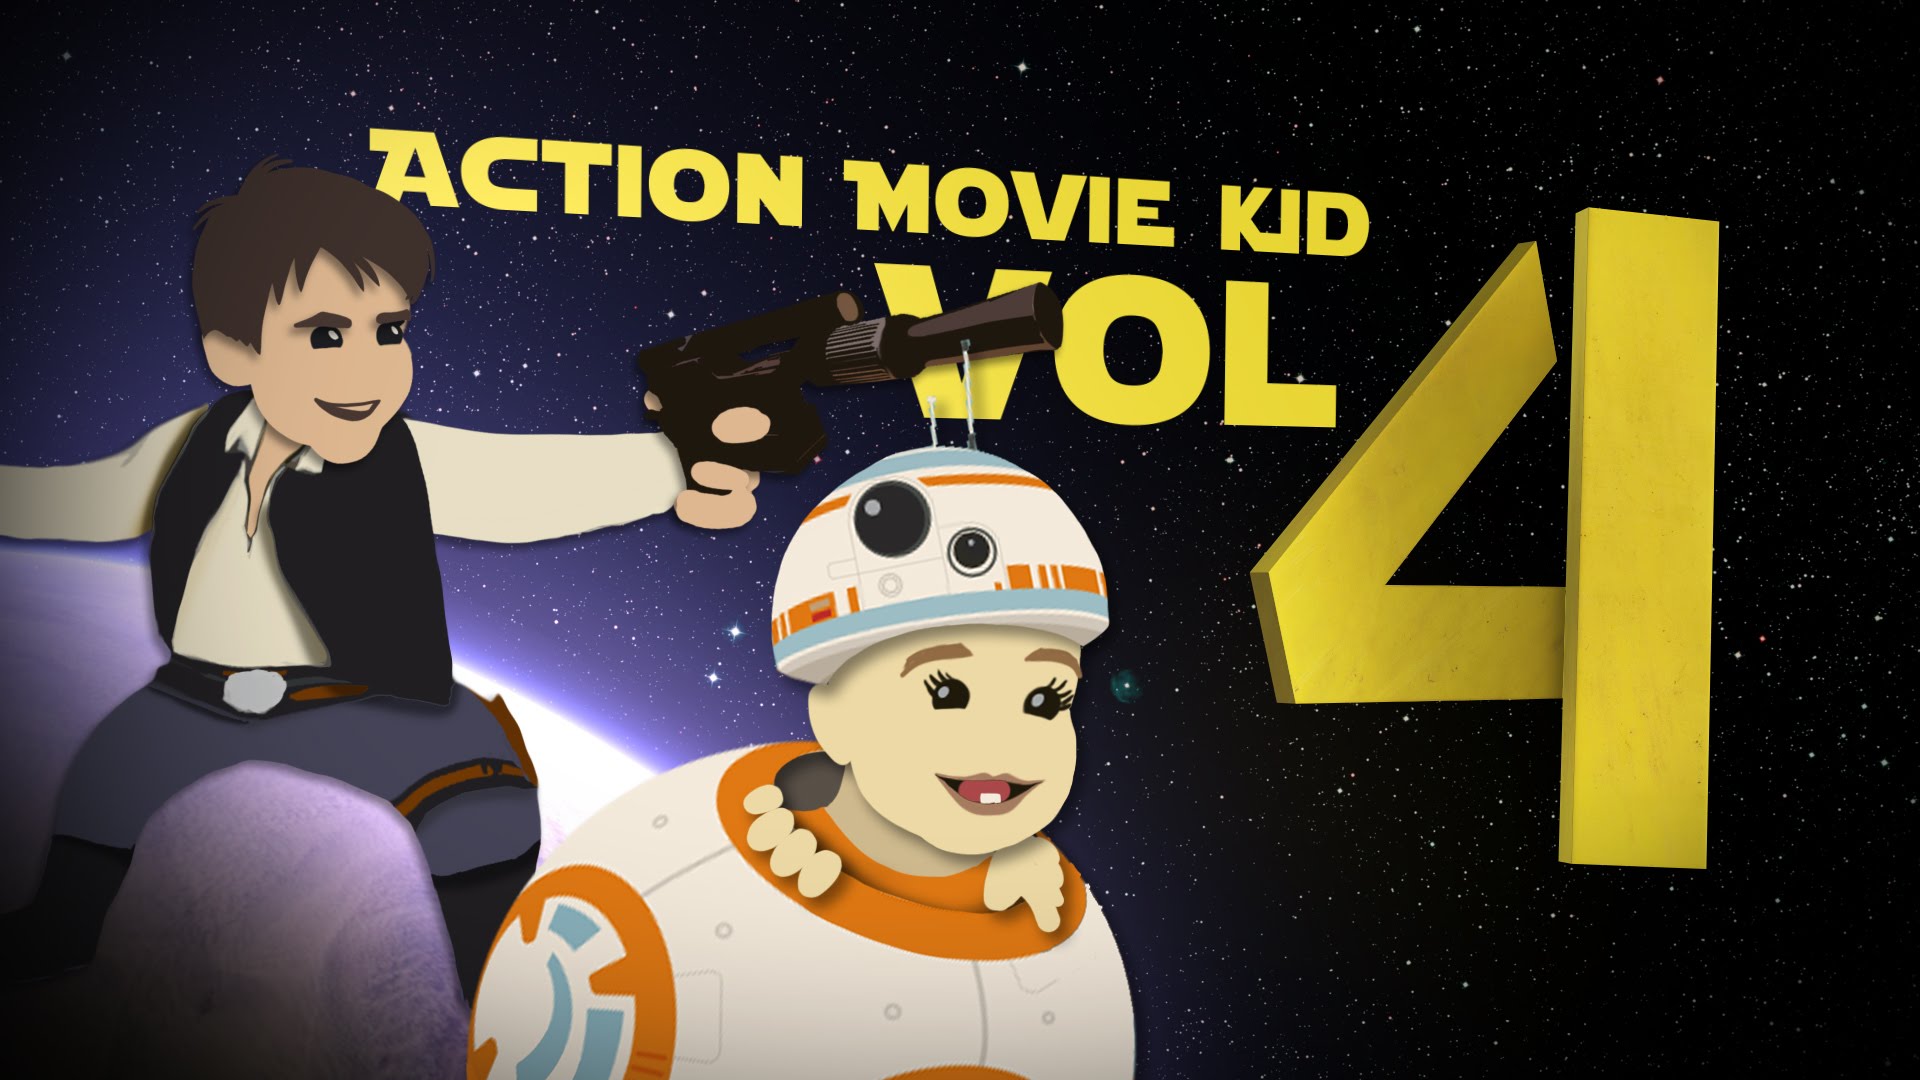 Mais um episódio das aventuras do Action Movie Kid